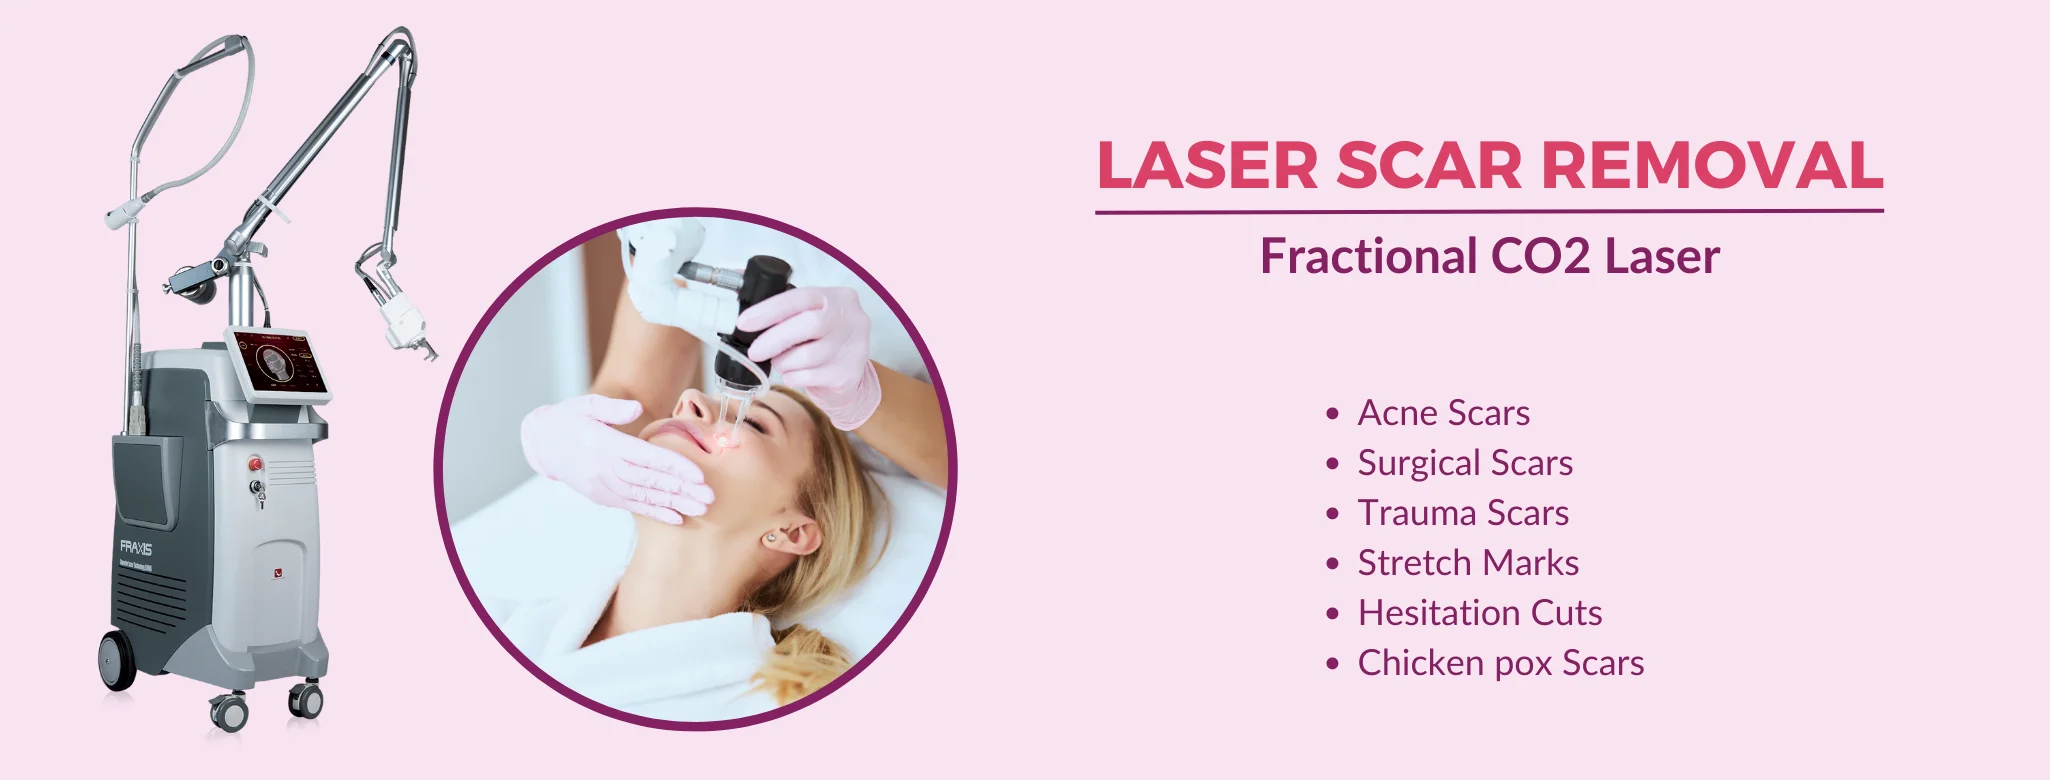 laser scar removal in delhi